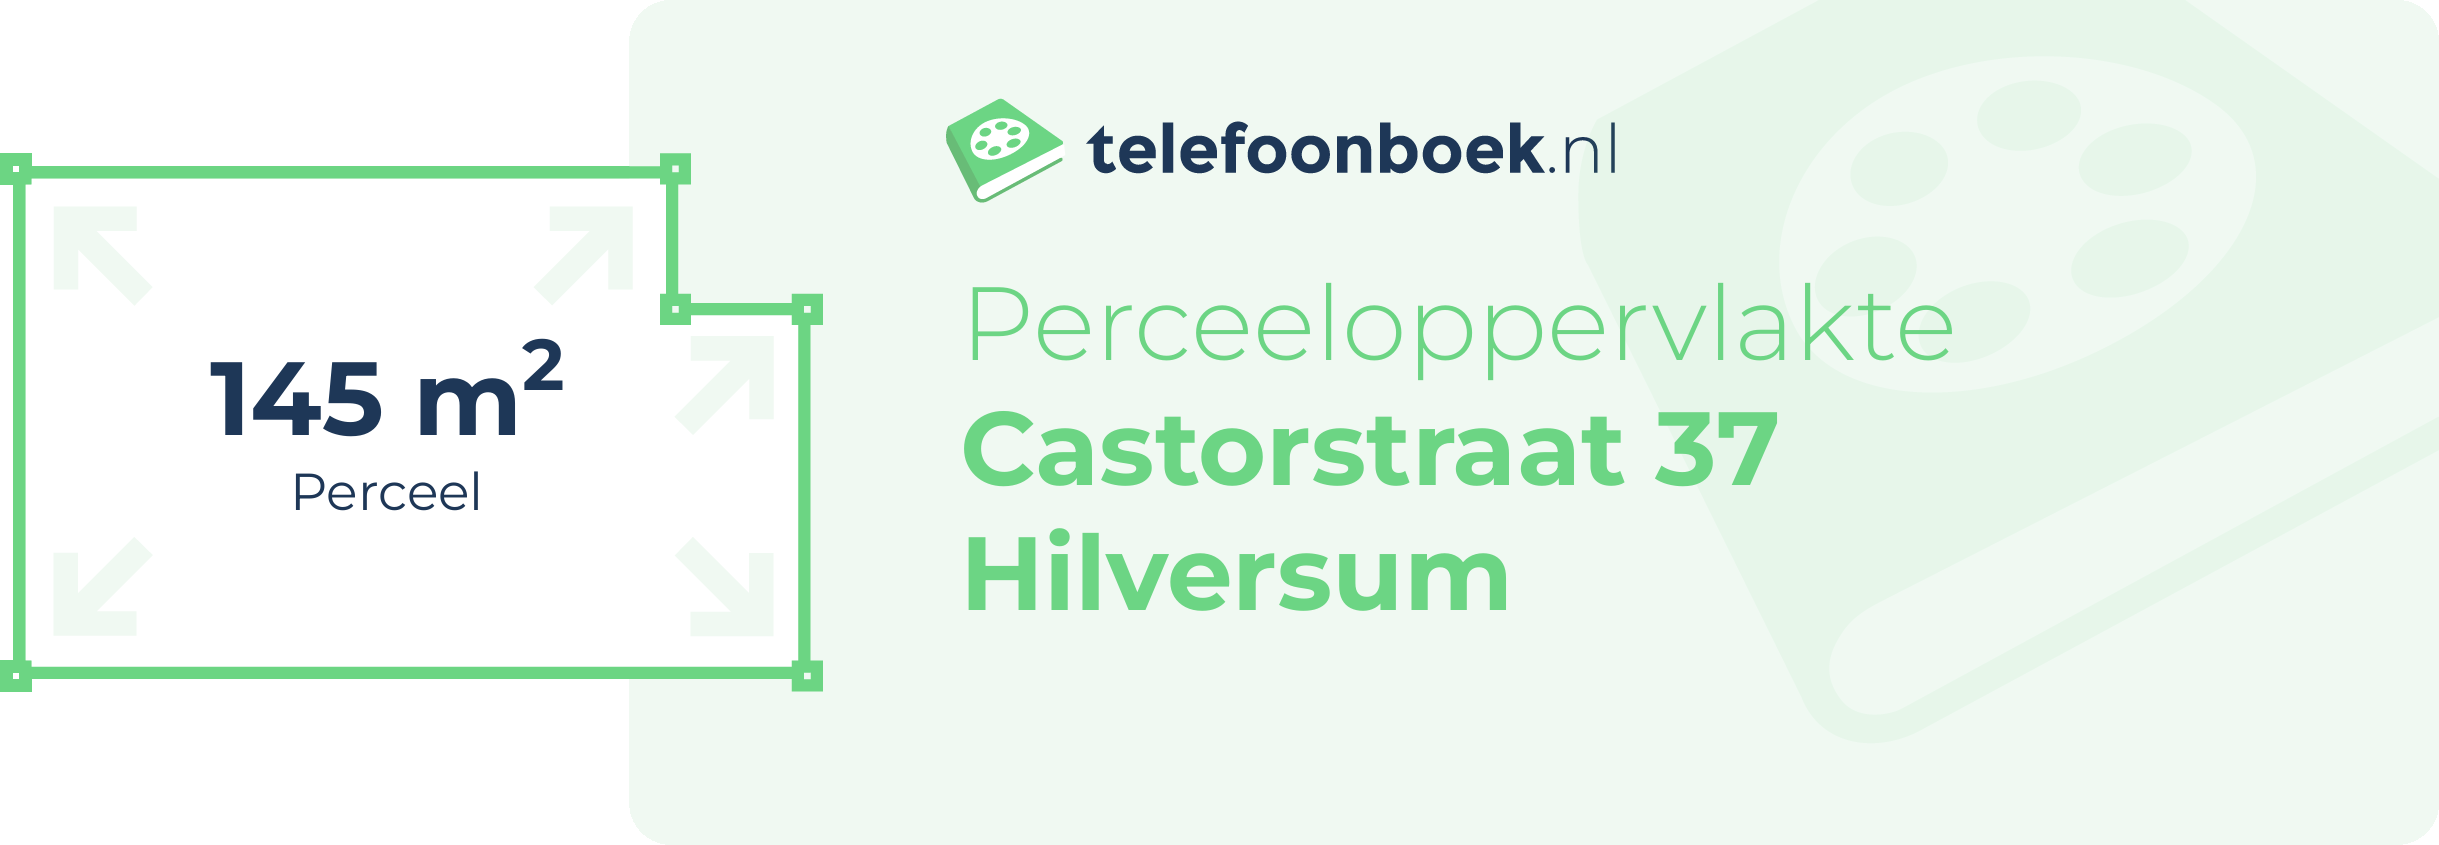 Perceeloppervlakte Castorstraat 37 Hilversum